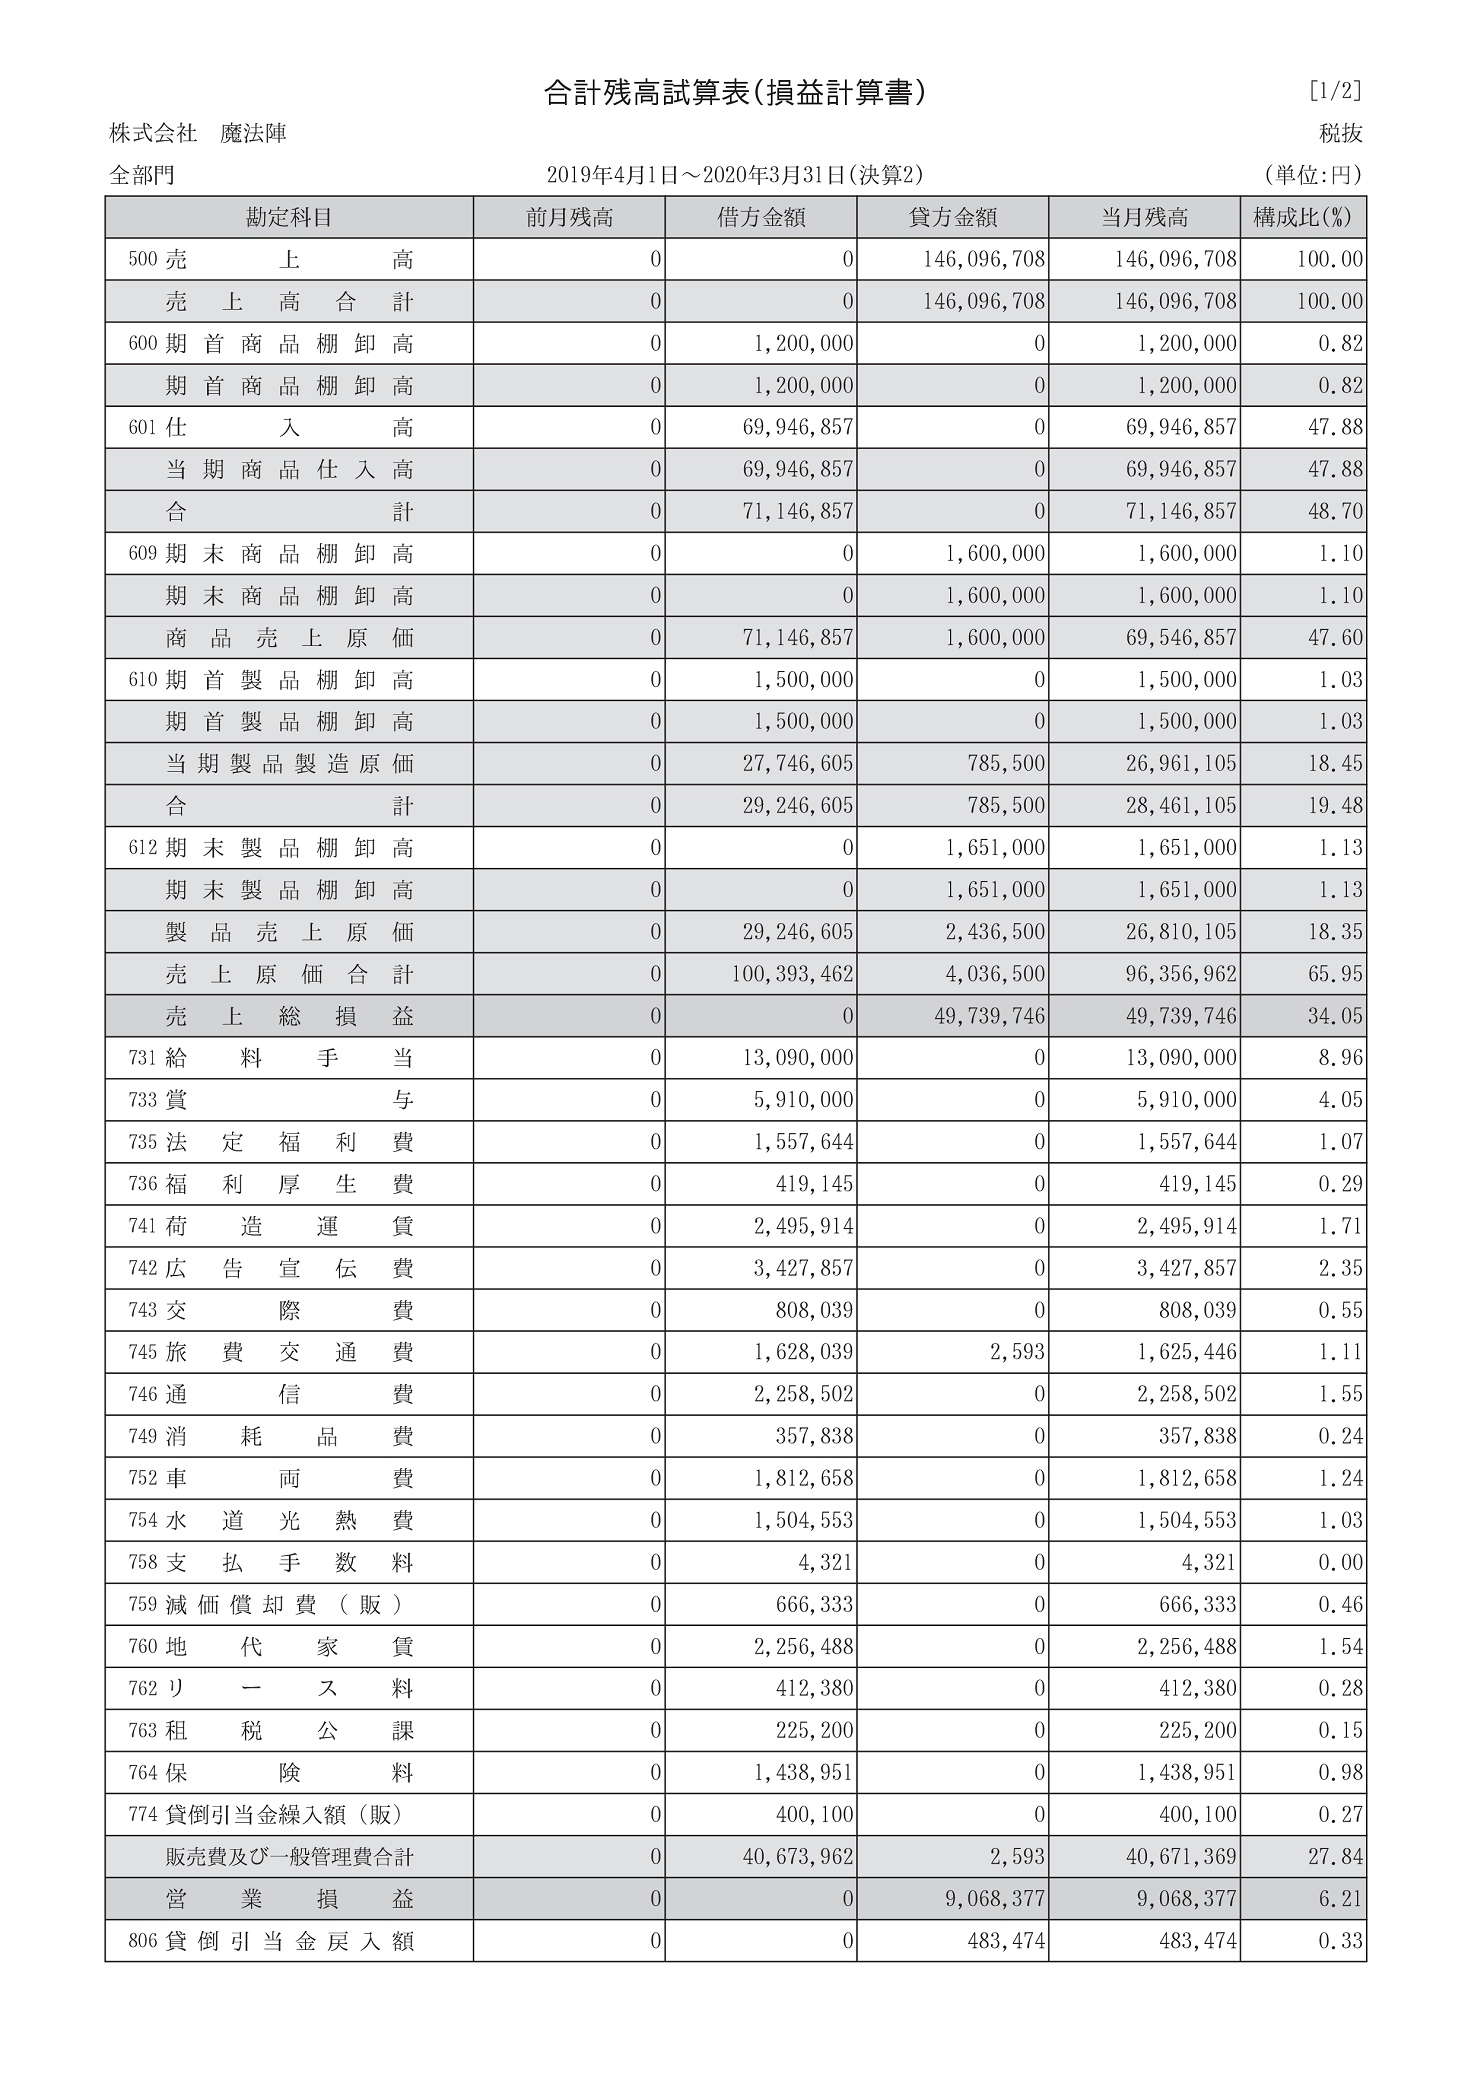 東京ビジネス 合計残高試算表 (建設・科目印刷・消費税無) 平成18年 